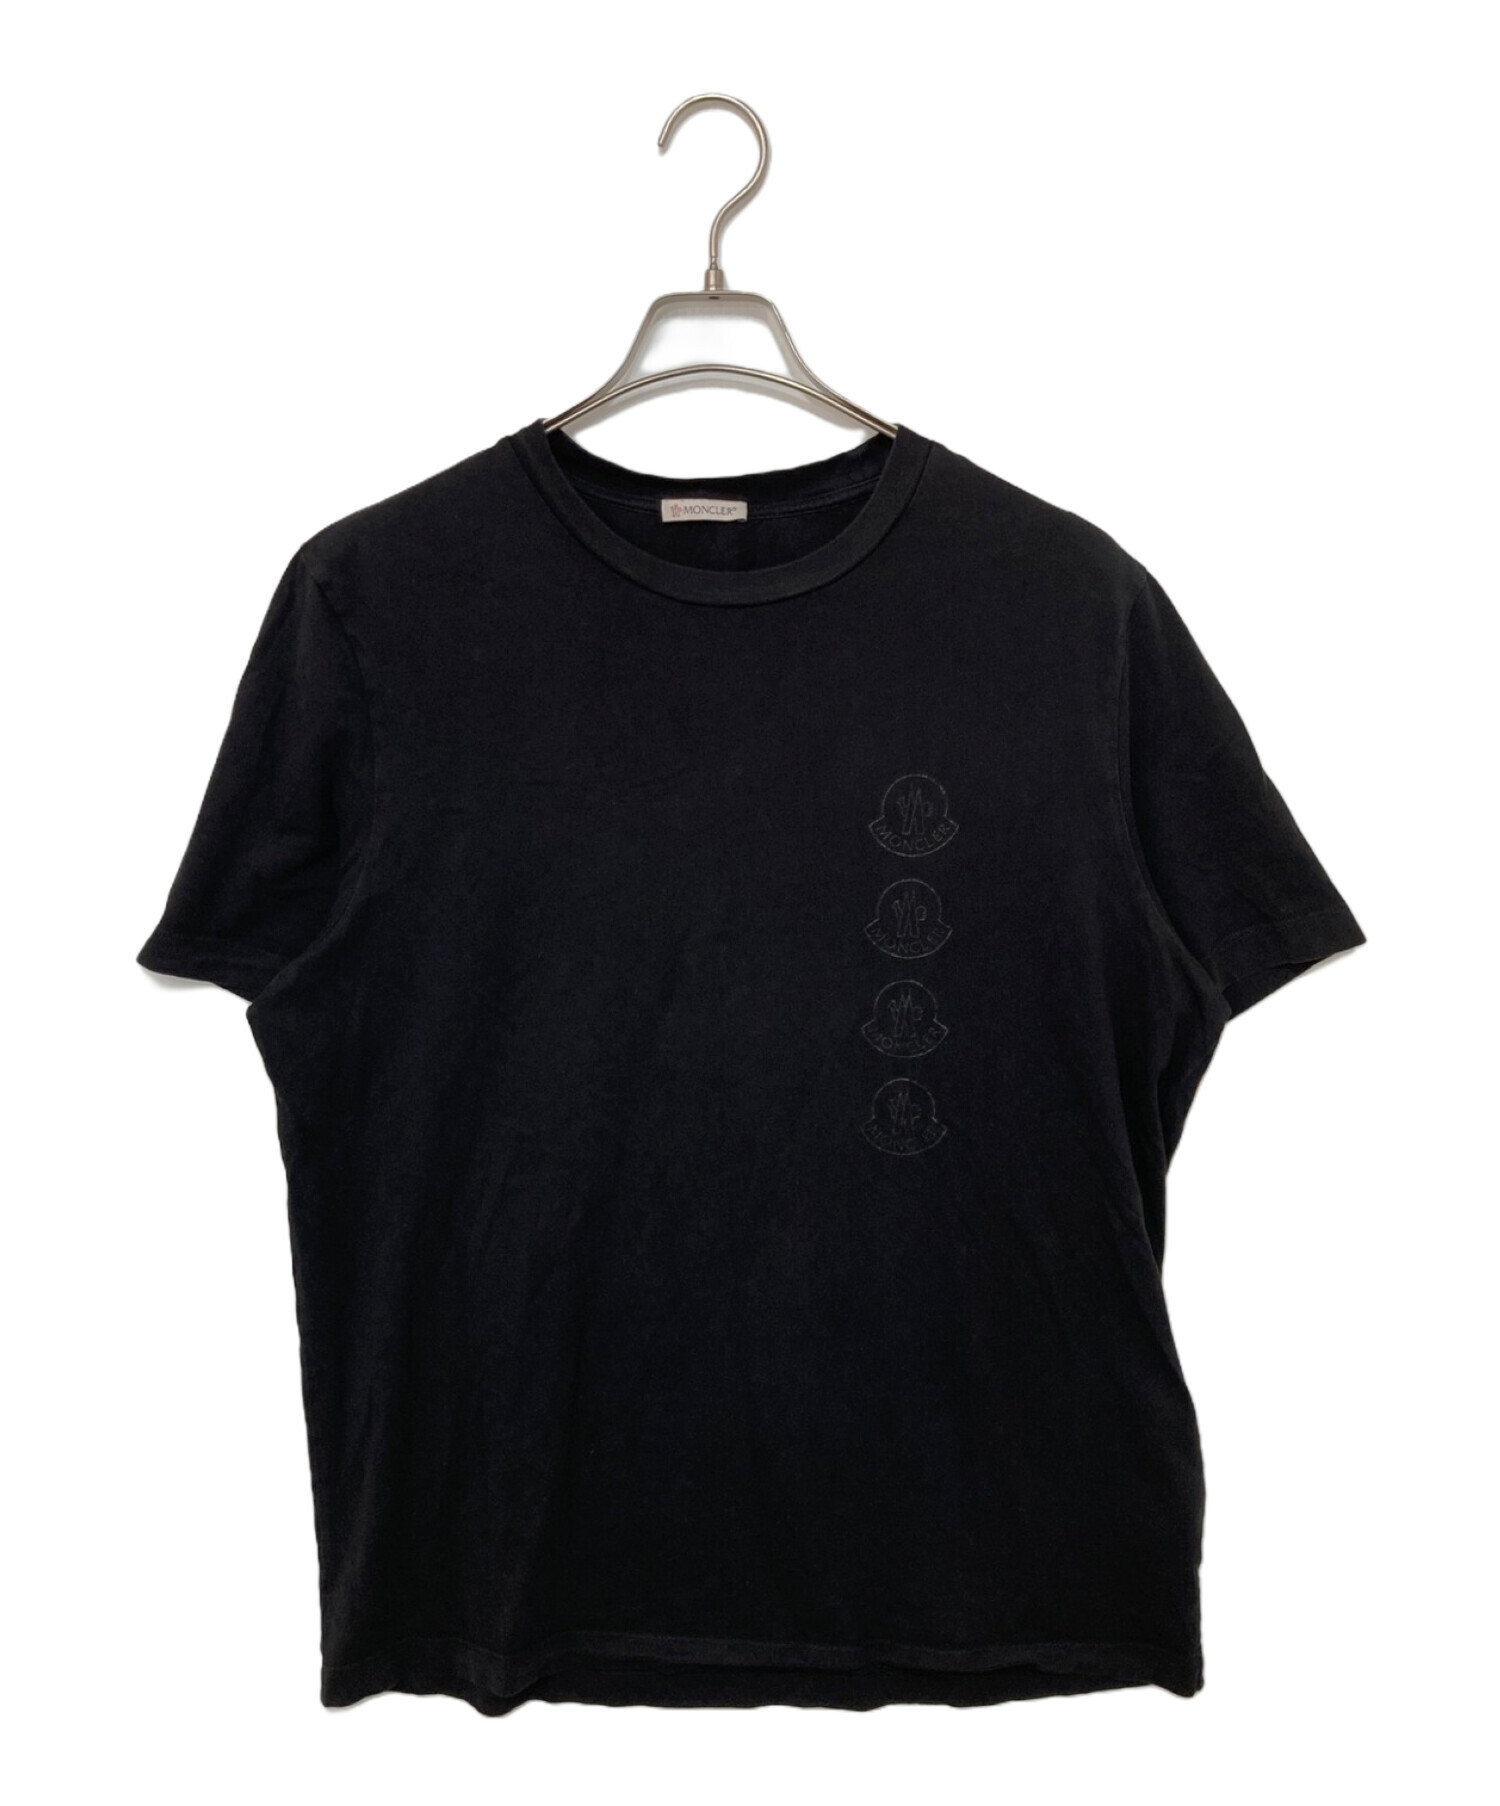 イタリア直営店ロゴが目立つ！◆MONCLER◆モンクレール ロゴ大きめTシャツ ブラック 黒